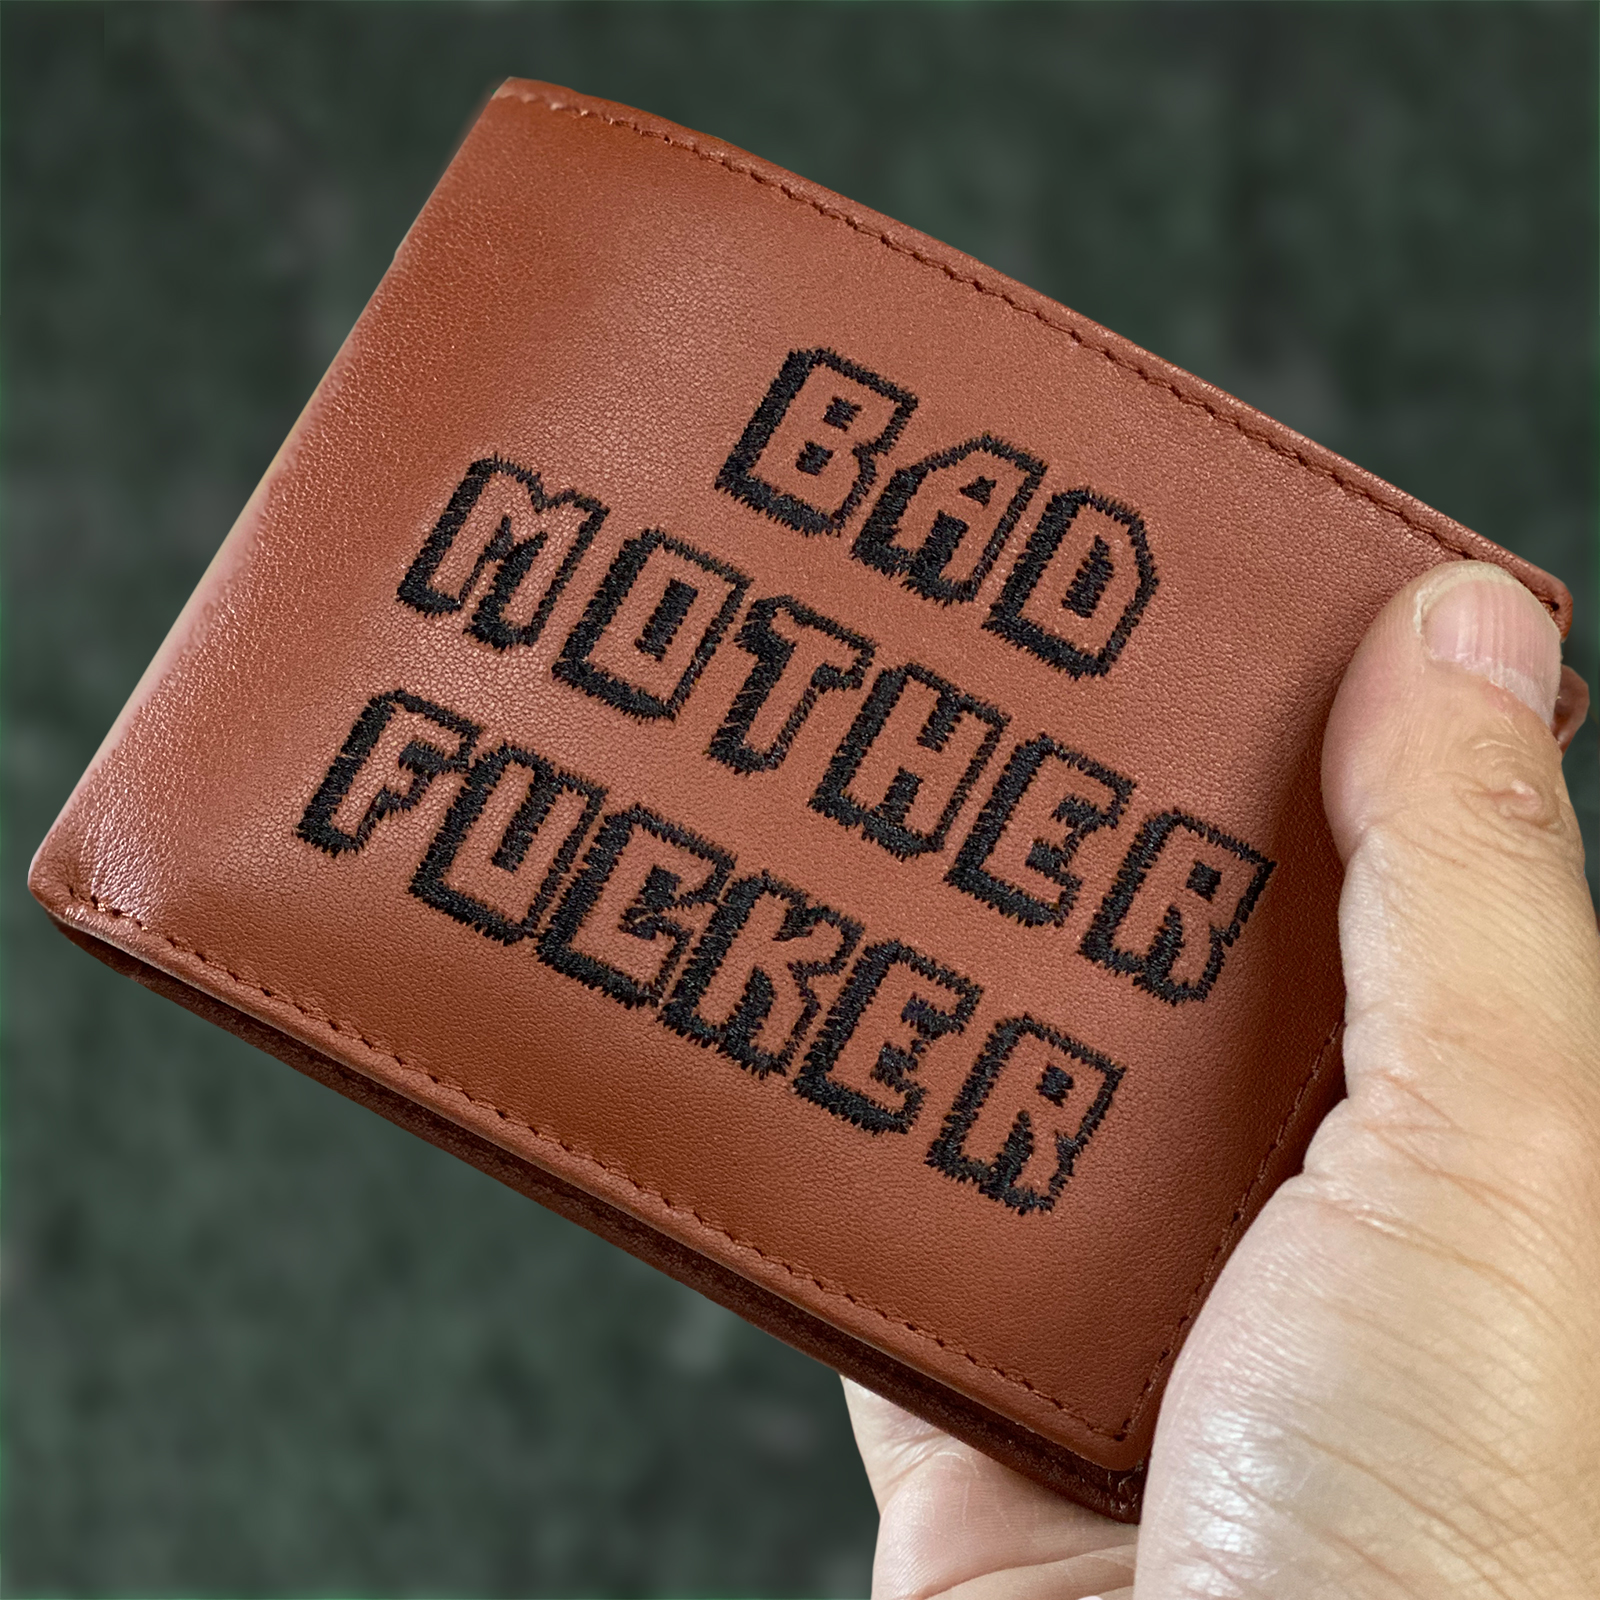 brieftasche bad mother fucker pulp fiction wallet  movie film Best Gift 